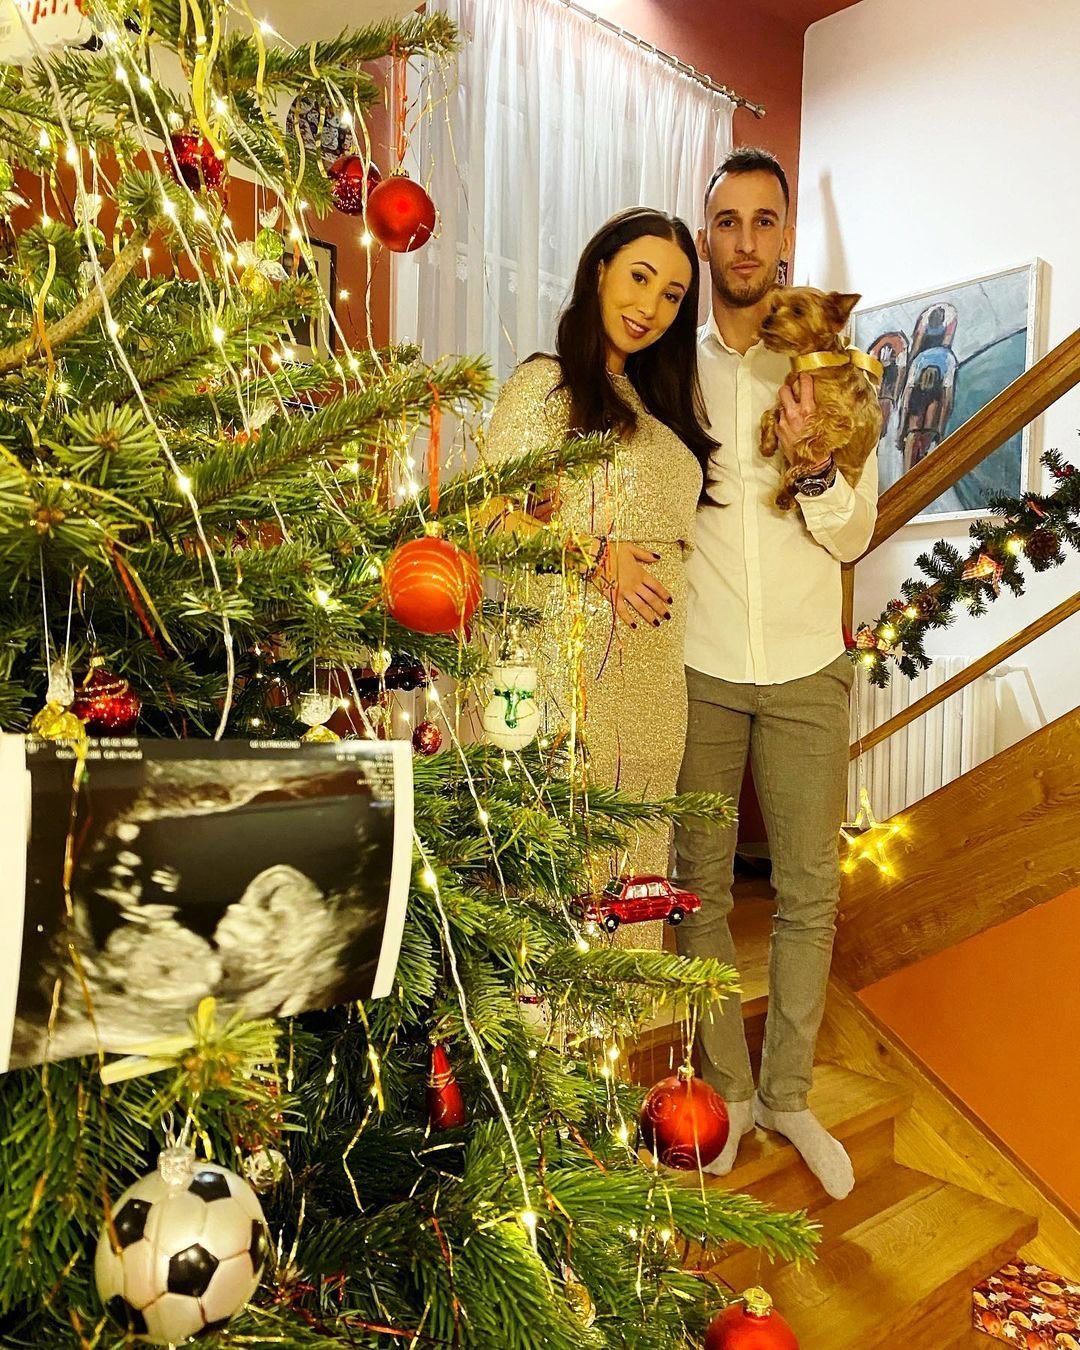 Matěj Hybš (27, fotbalista Plzně) s manželkou Lucií se těší na potomka.